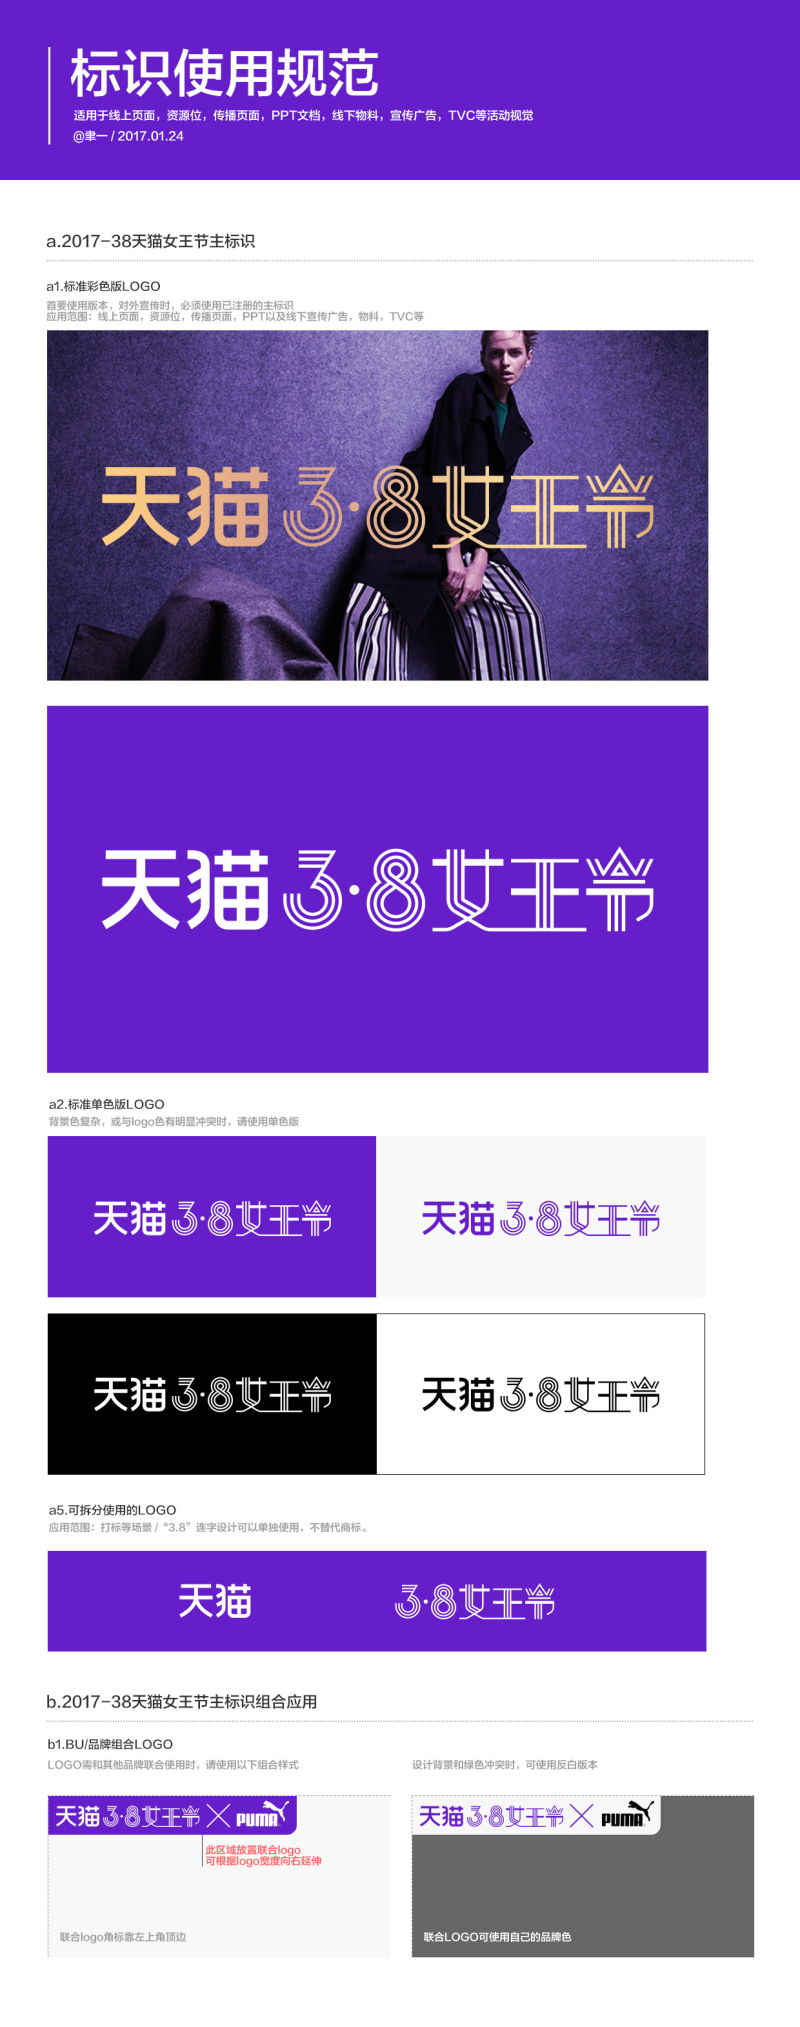 天猫3.8女王节logo素材